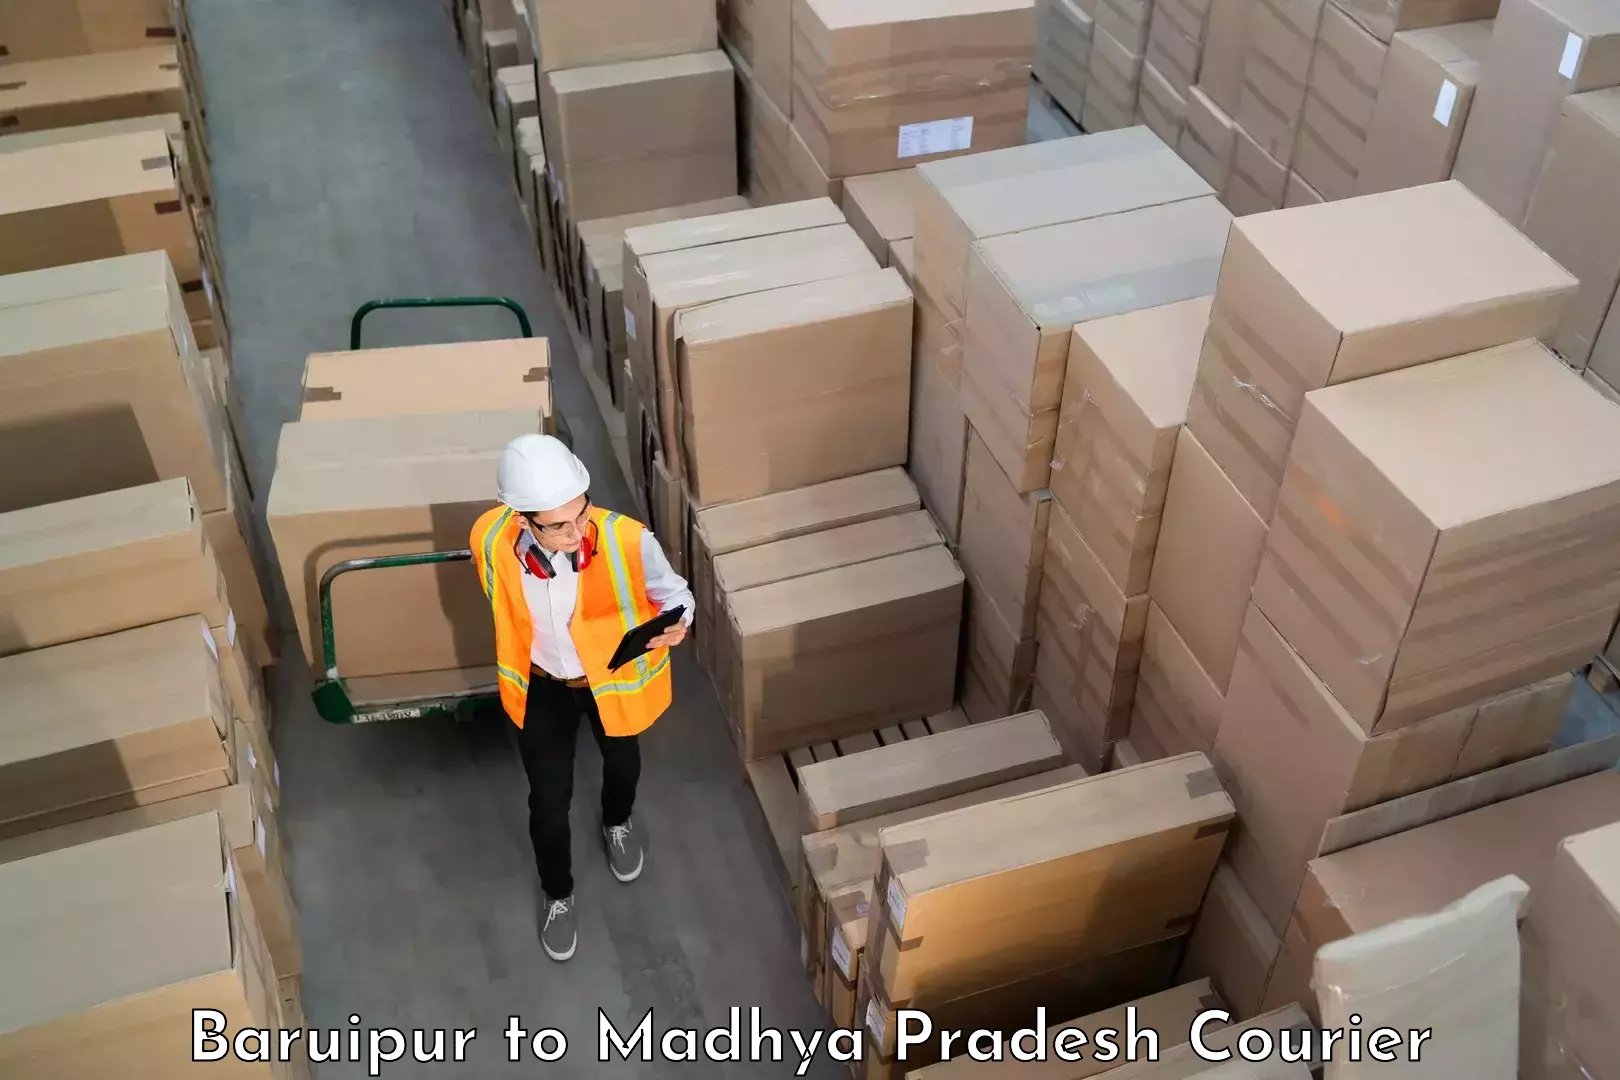 Baggage shipping experts Baruipur to Raipur Karchuliyan